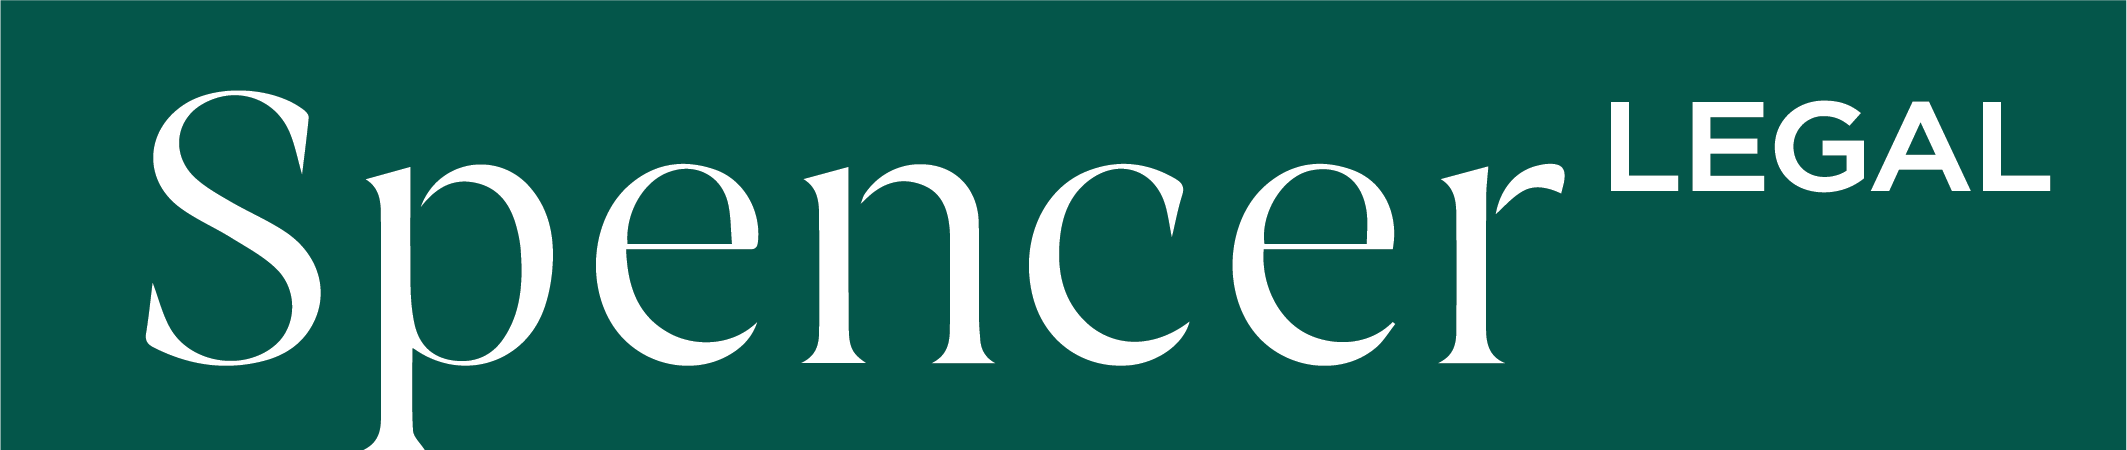 Spencer Legal logo